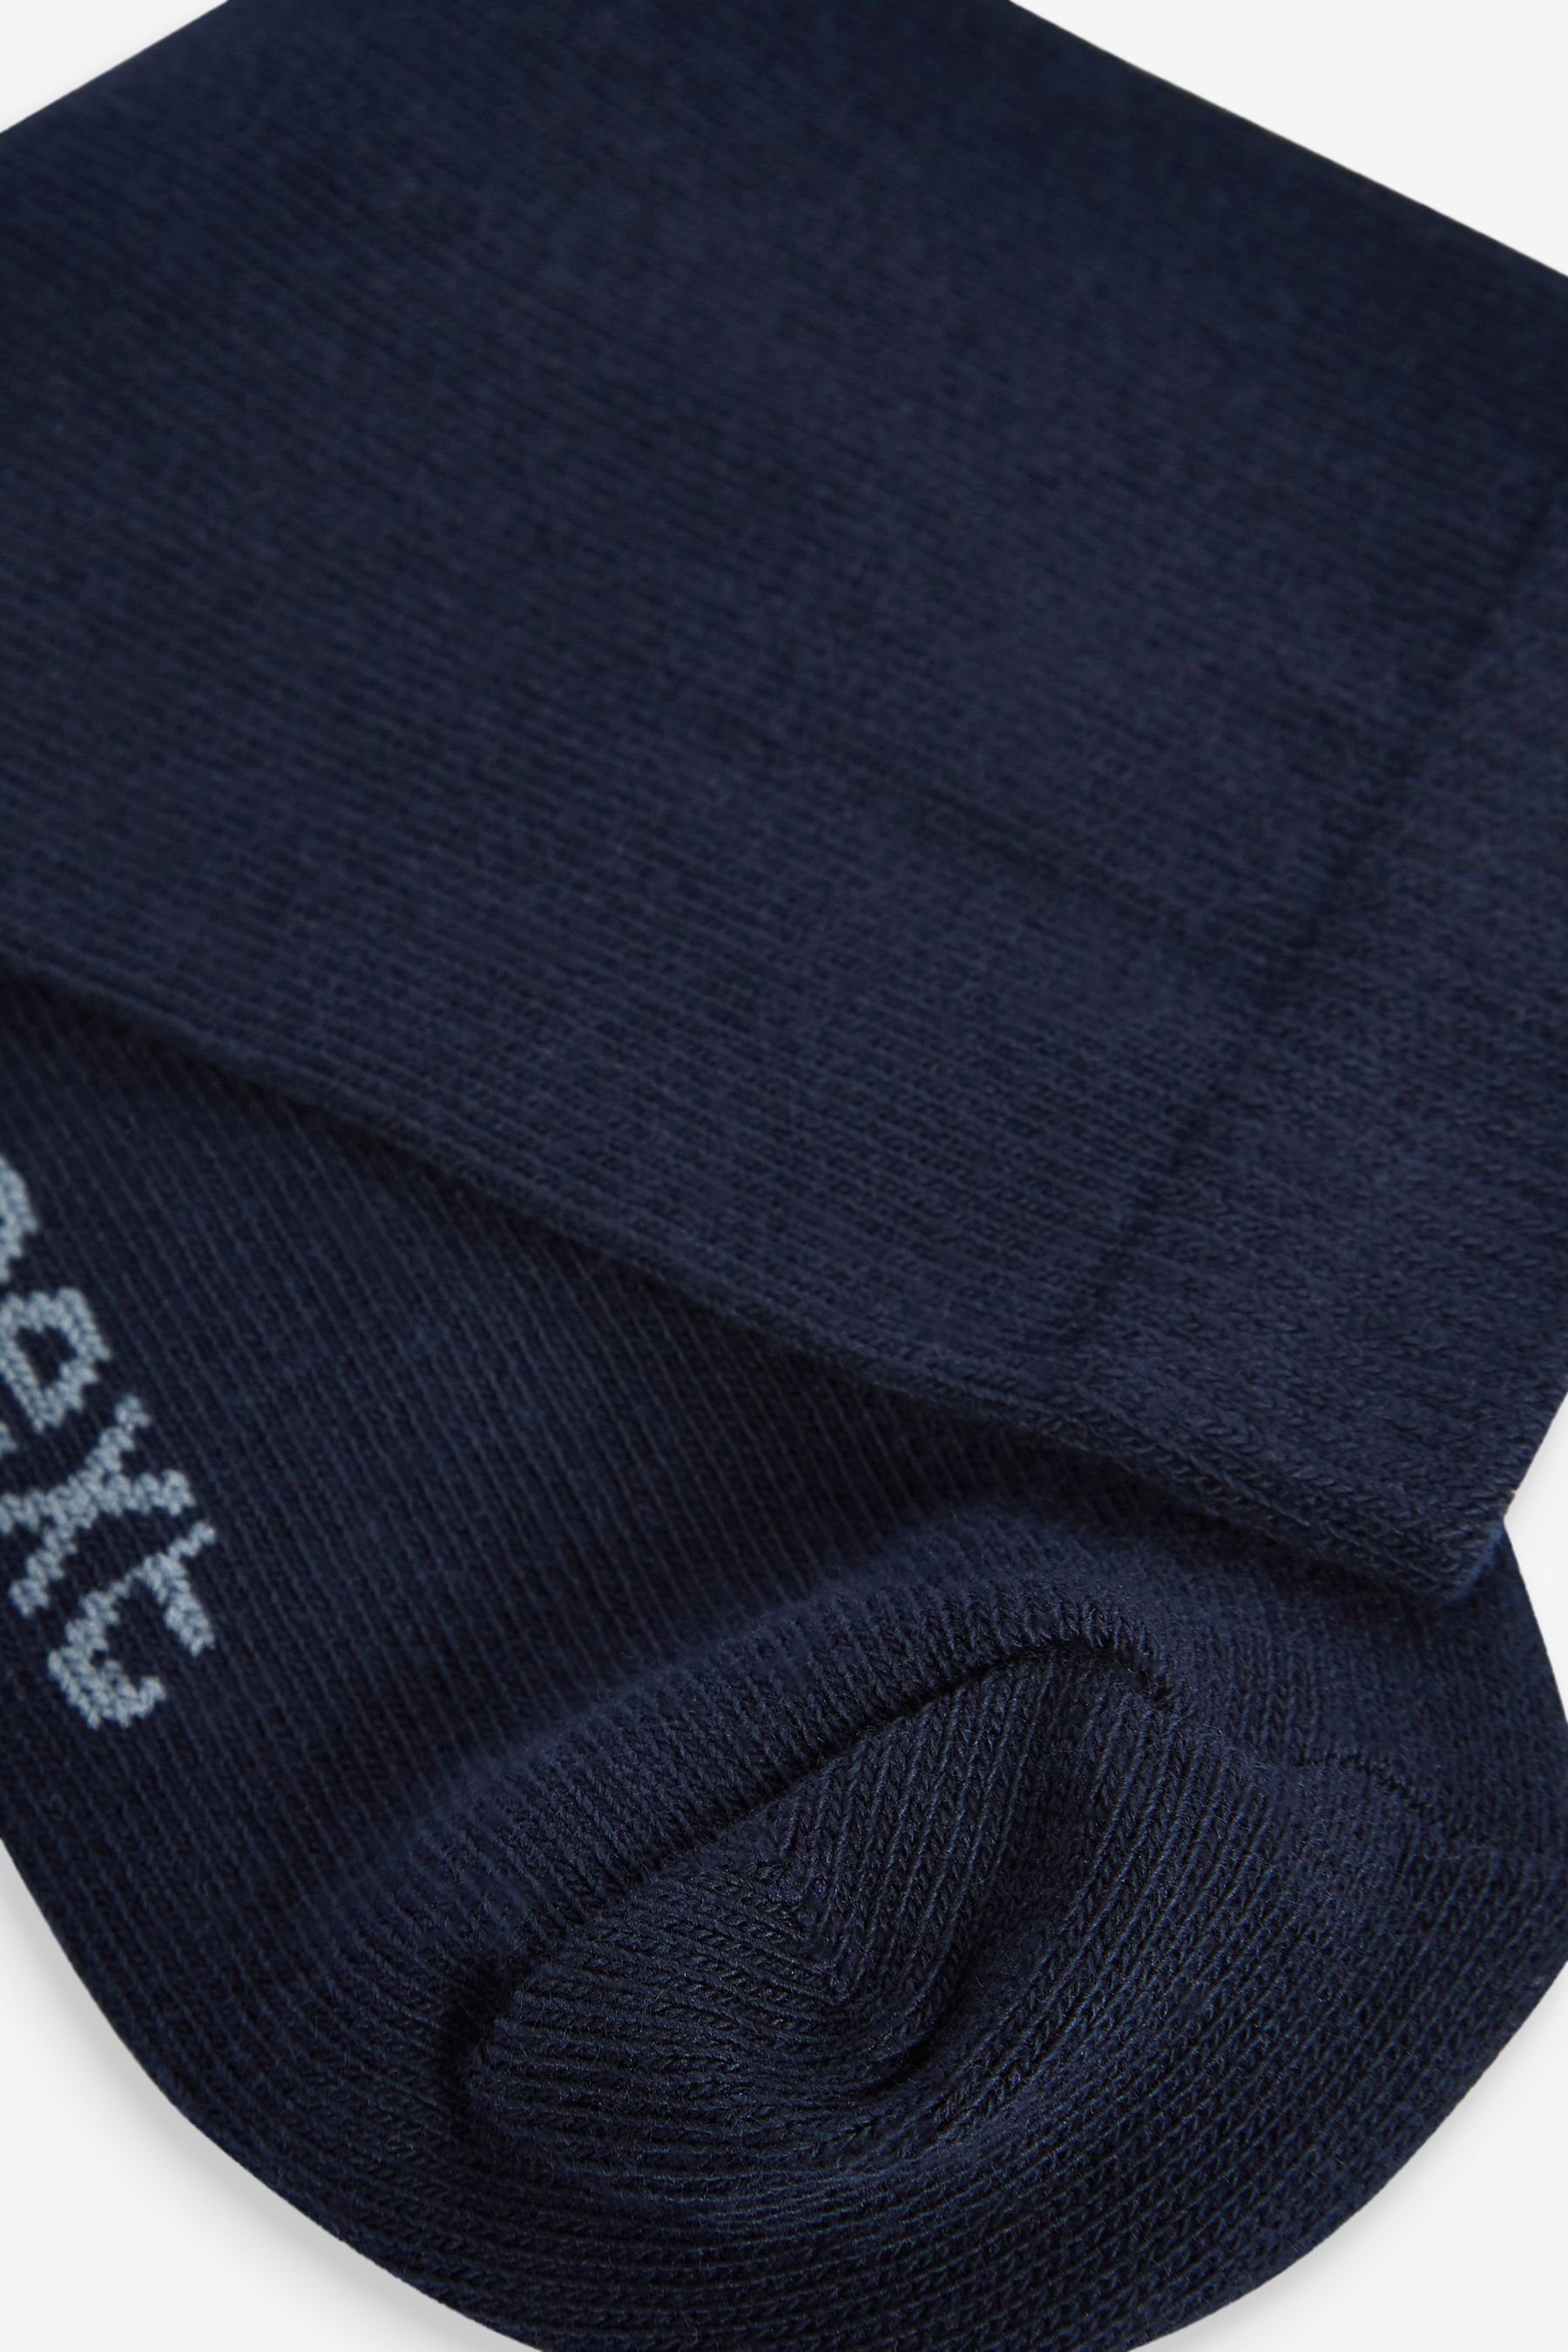 Navy (1-Paar) mit Baumwollanteil, Kurzsocken Socken Blue hohem 10er-Pack Next